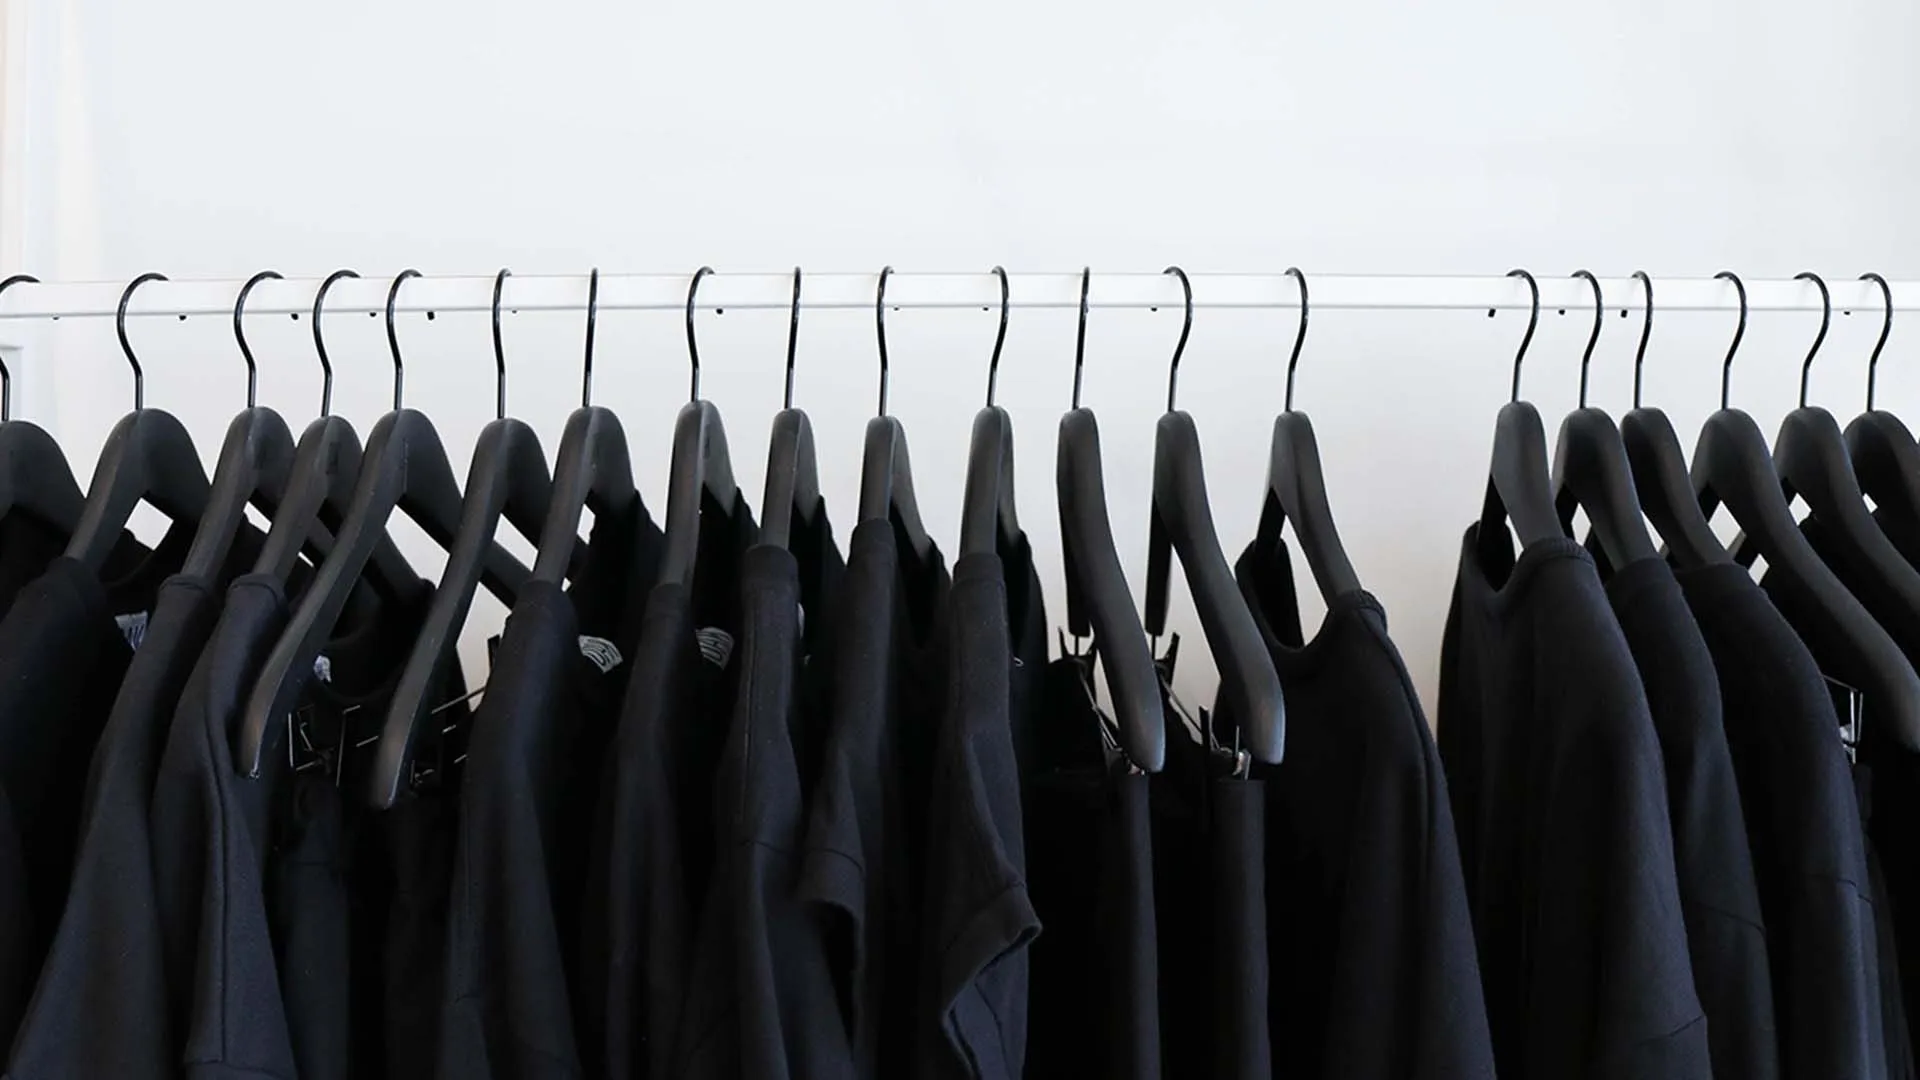 A rack of black t-shirts